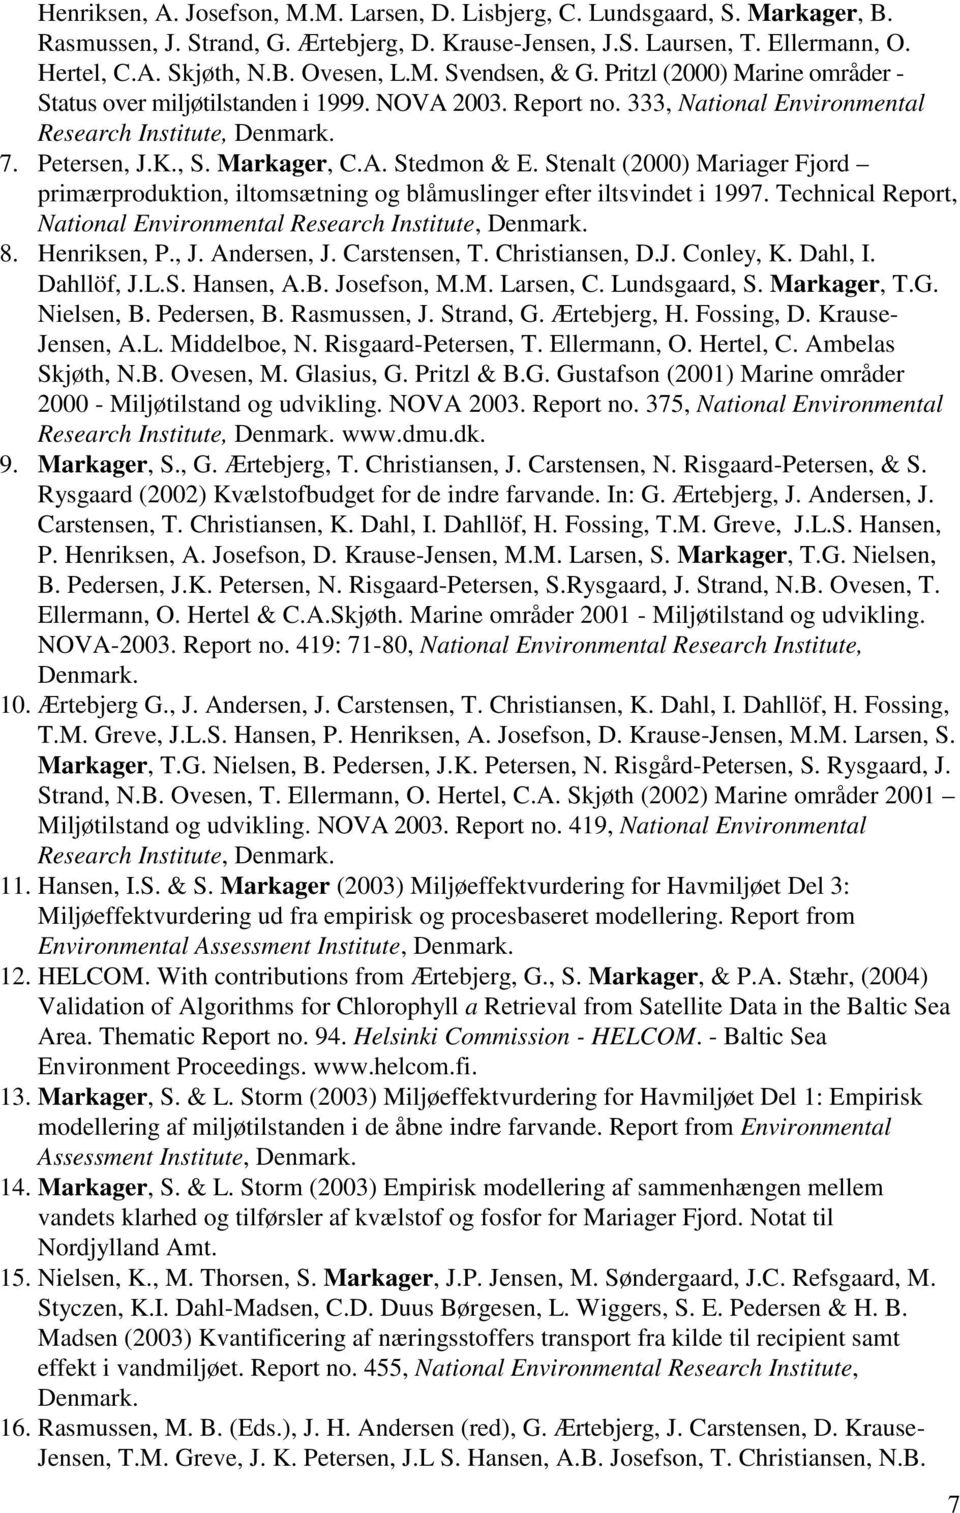 Stenalt (2000) Mariager Fjord primærproduktion, iltomsætning og blåmuslinger efter iltsvindet i 1997. Technical Report, National Environmental Research Institute, Denmark. 8. Henriksen, P., J.